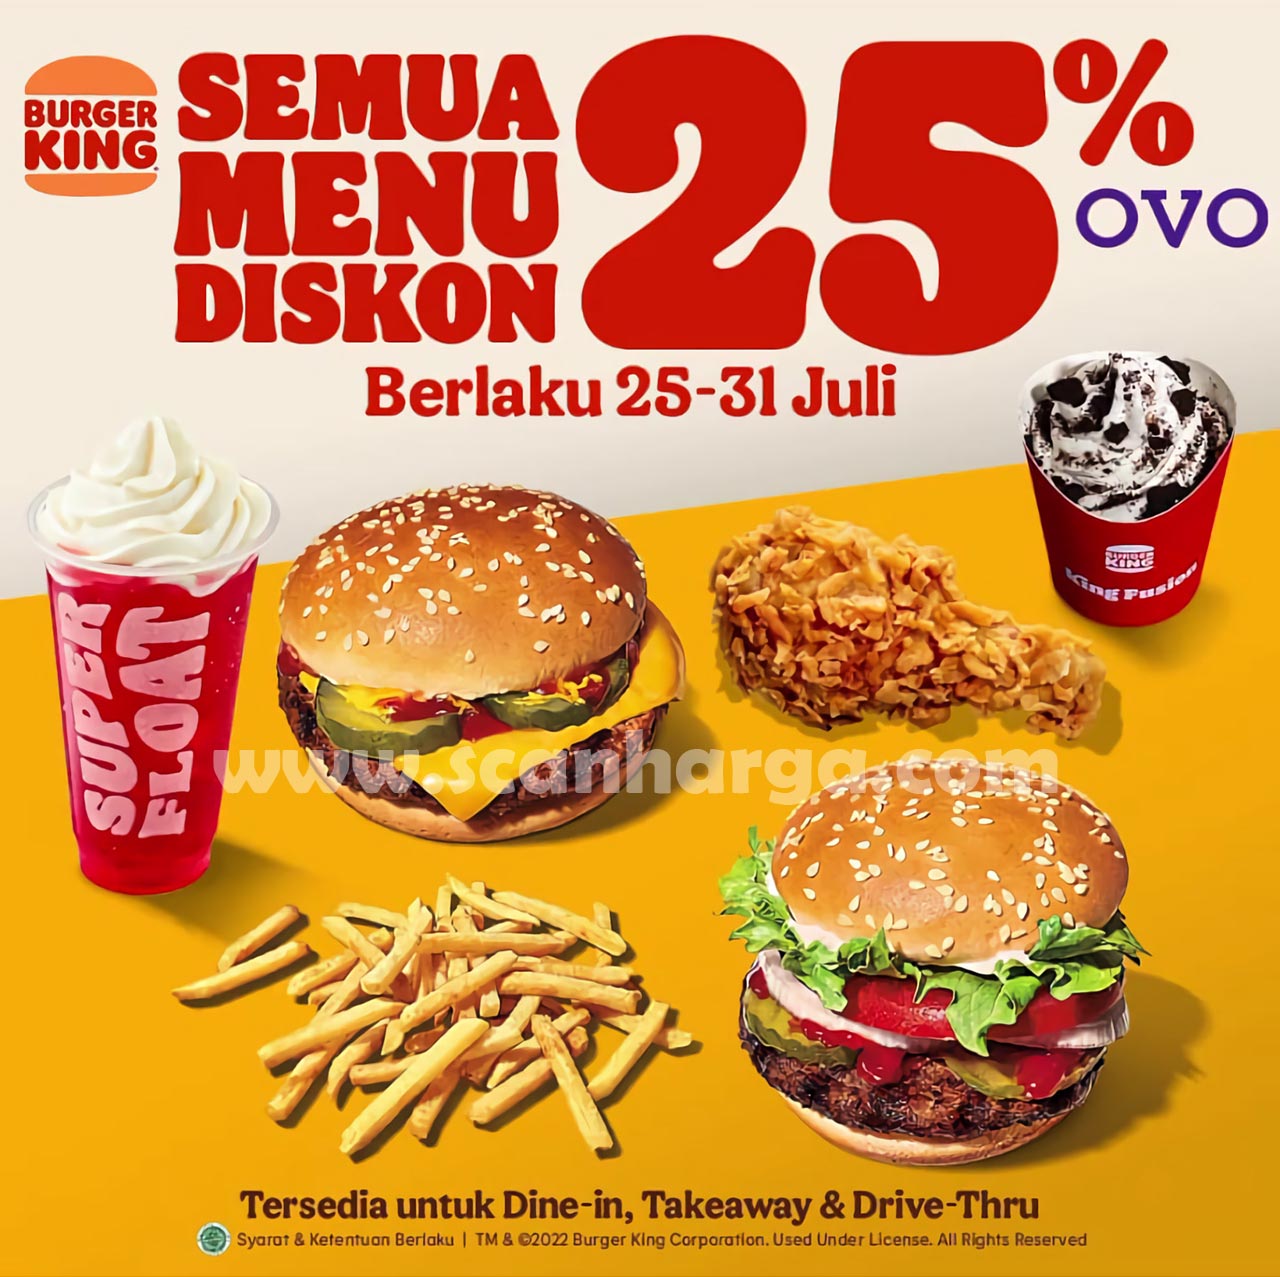 Promo Burger King Dengan OVO Diskon 25% untuk Semua Menu*